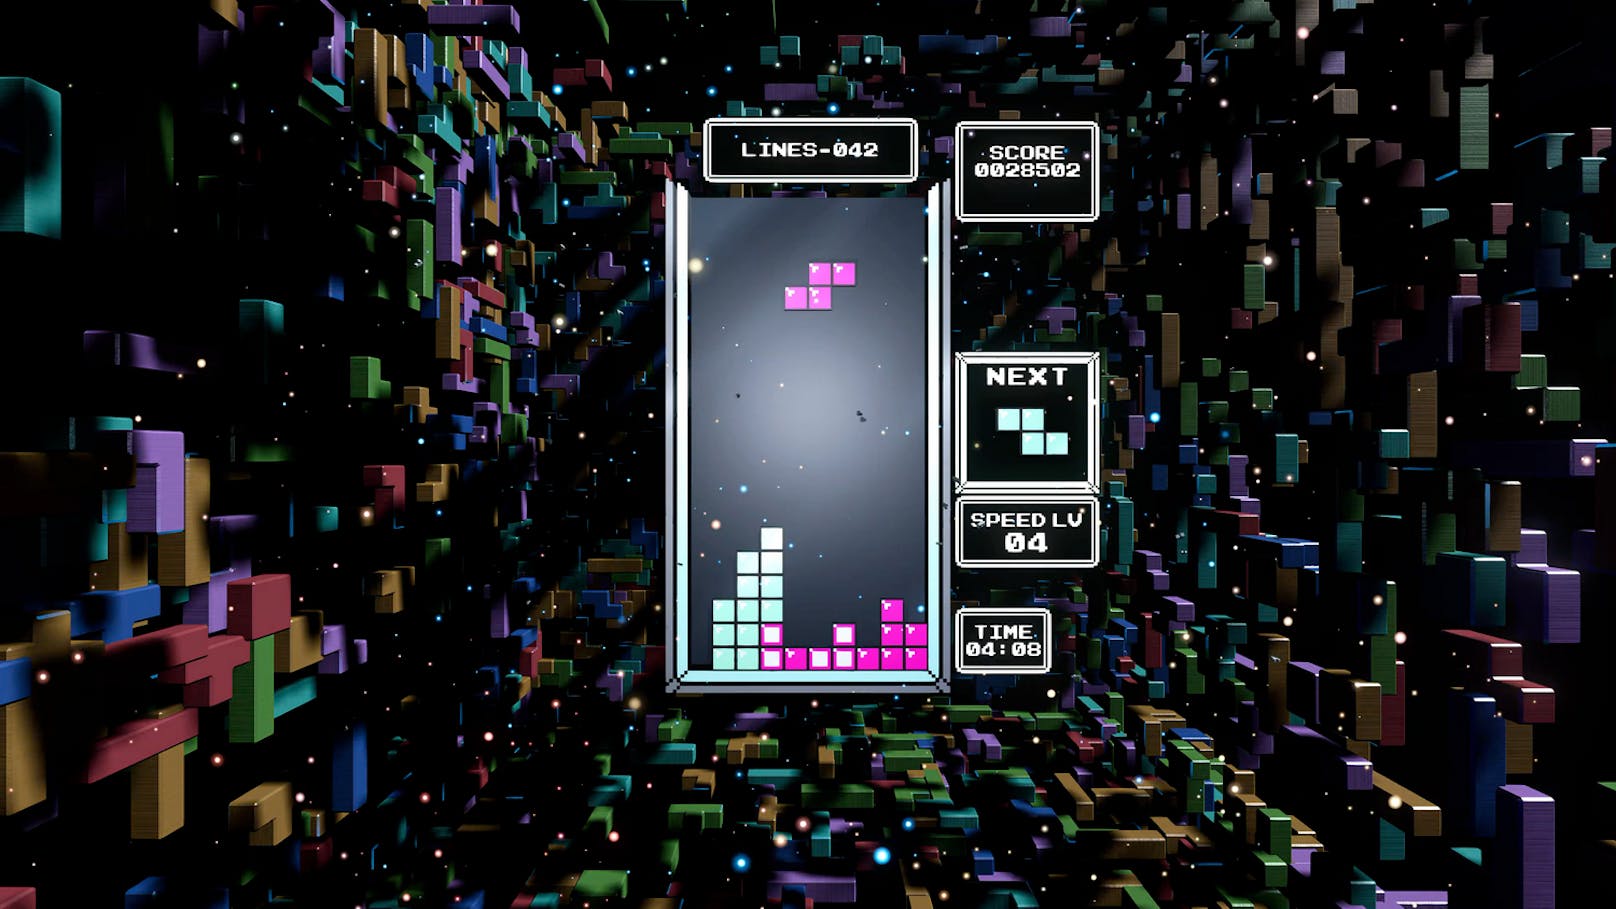 Am 6. Juni 1984 erschien der Spiele-Klassiker "Tetris" auf der Bildfläche. Und er sorgte für allerlei Superlativen in der Videospielbranche. Unter anderem wurde der Titel über ...